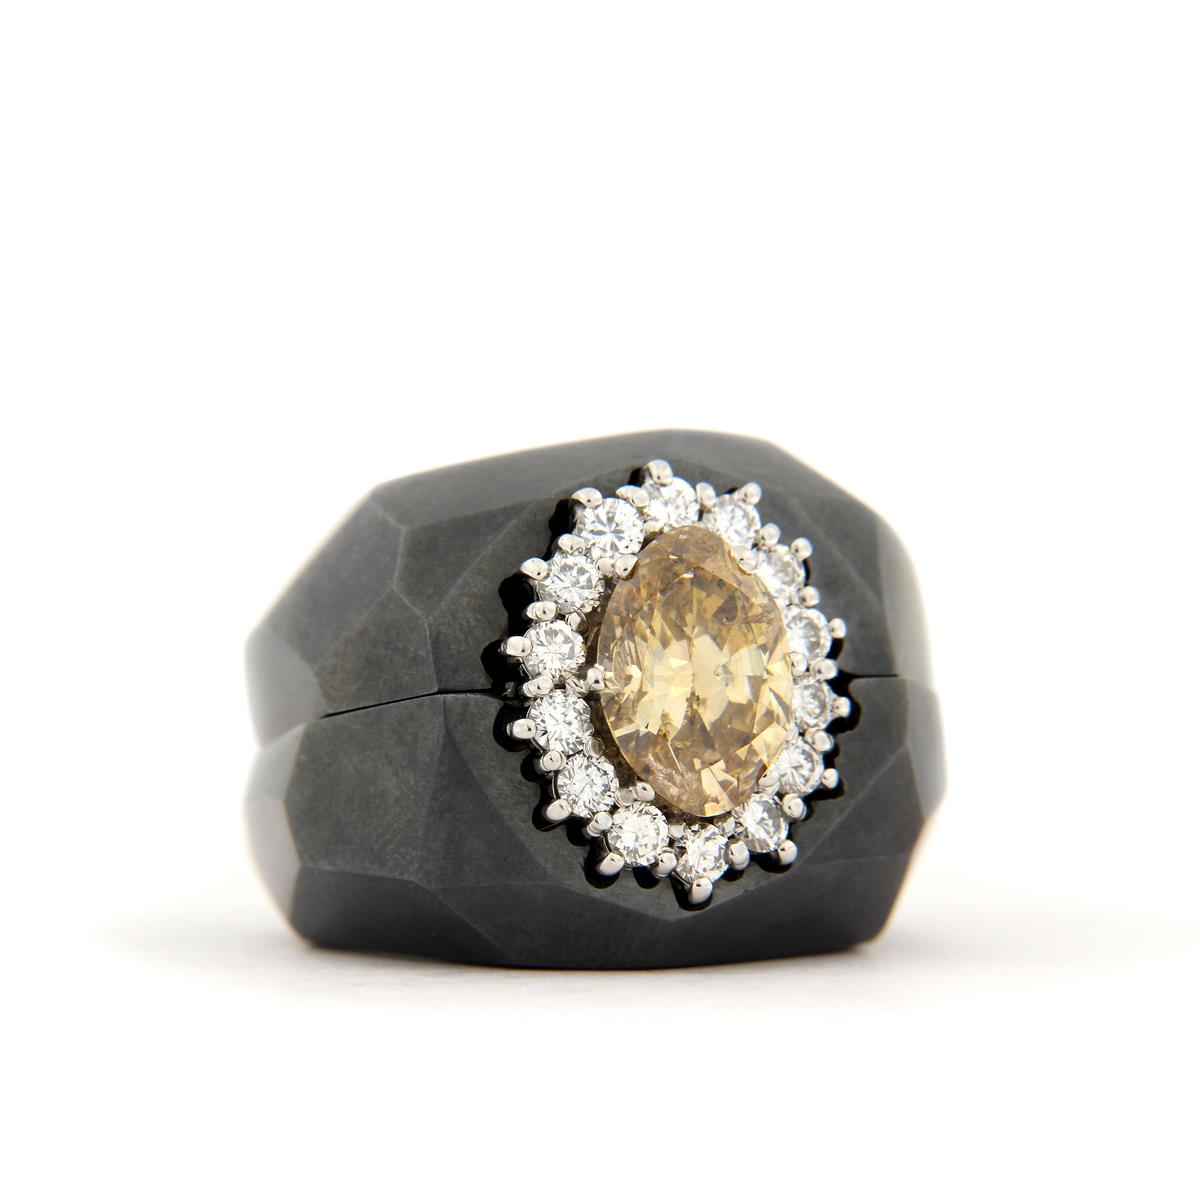 Katie g. Jewellery - Ring Casing für Ring mit braunem Diamant und weißen Brillanten